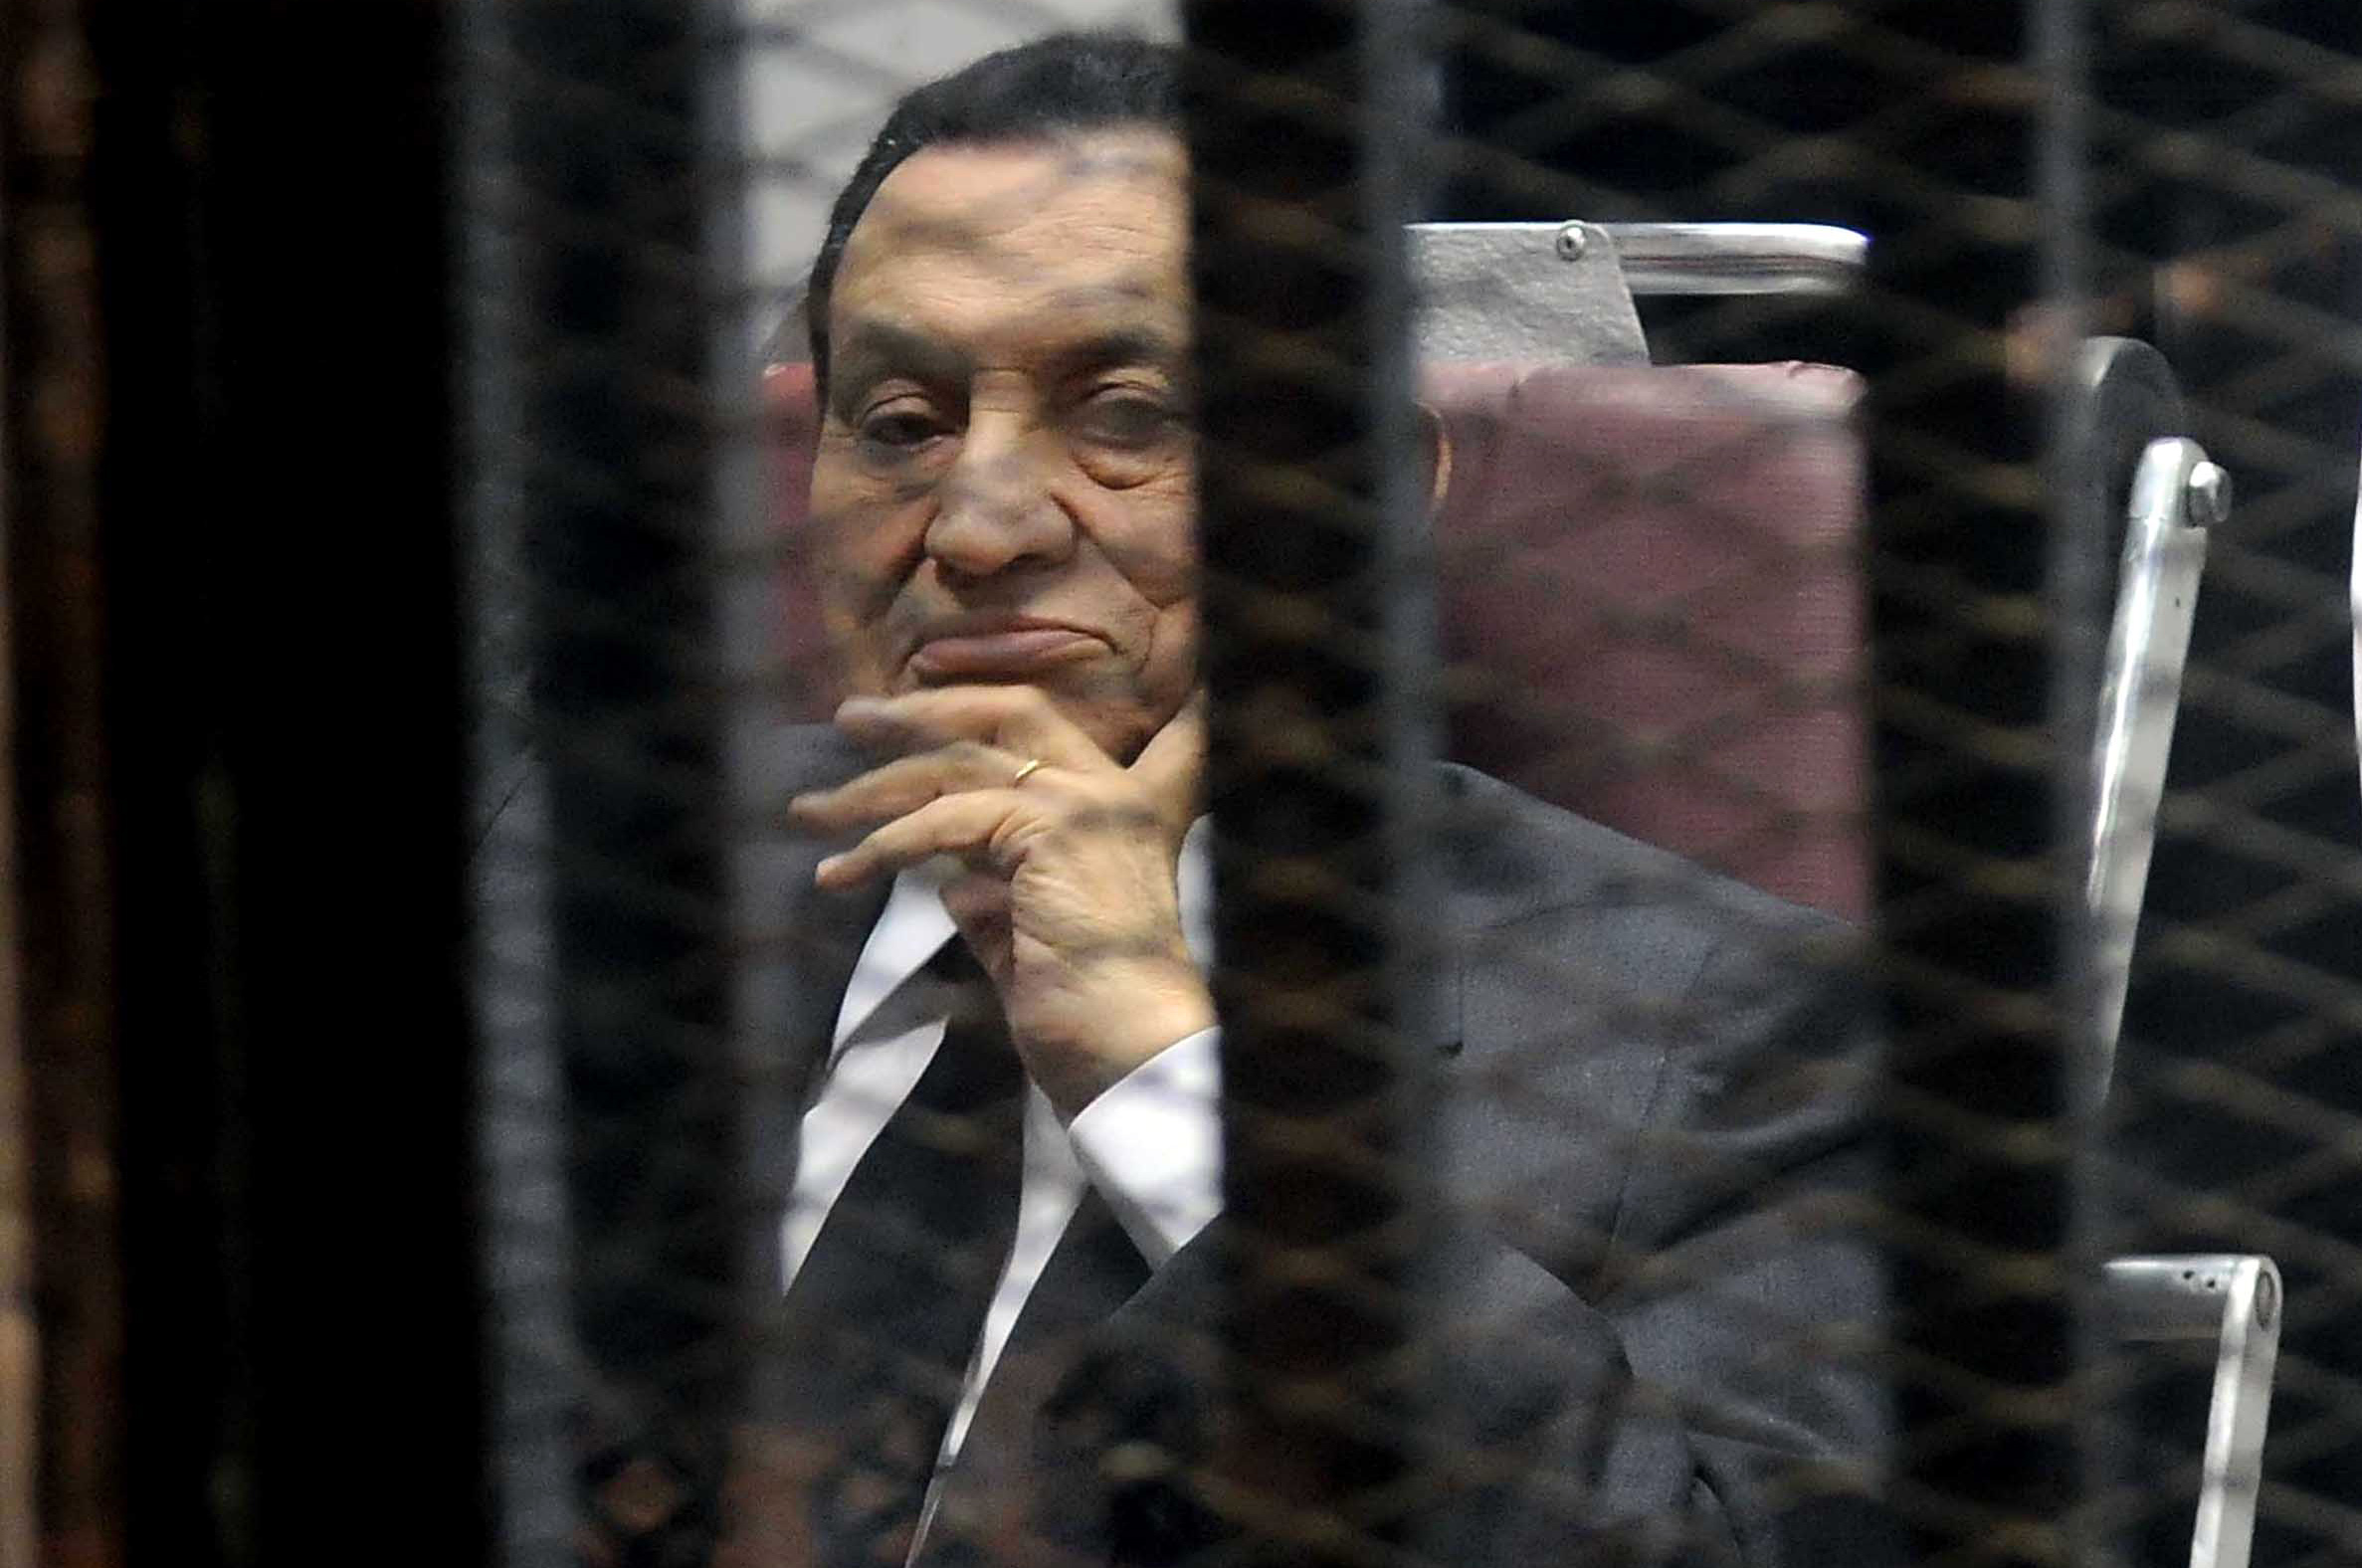   محكمة النقض تستأنف إعادة محاكمة مبارك فى قضية قتل متظاهرى ثورة 25 يناير